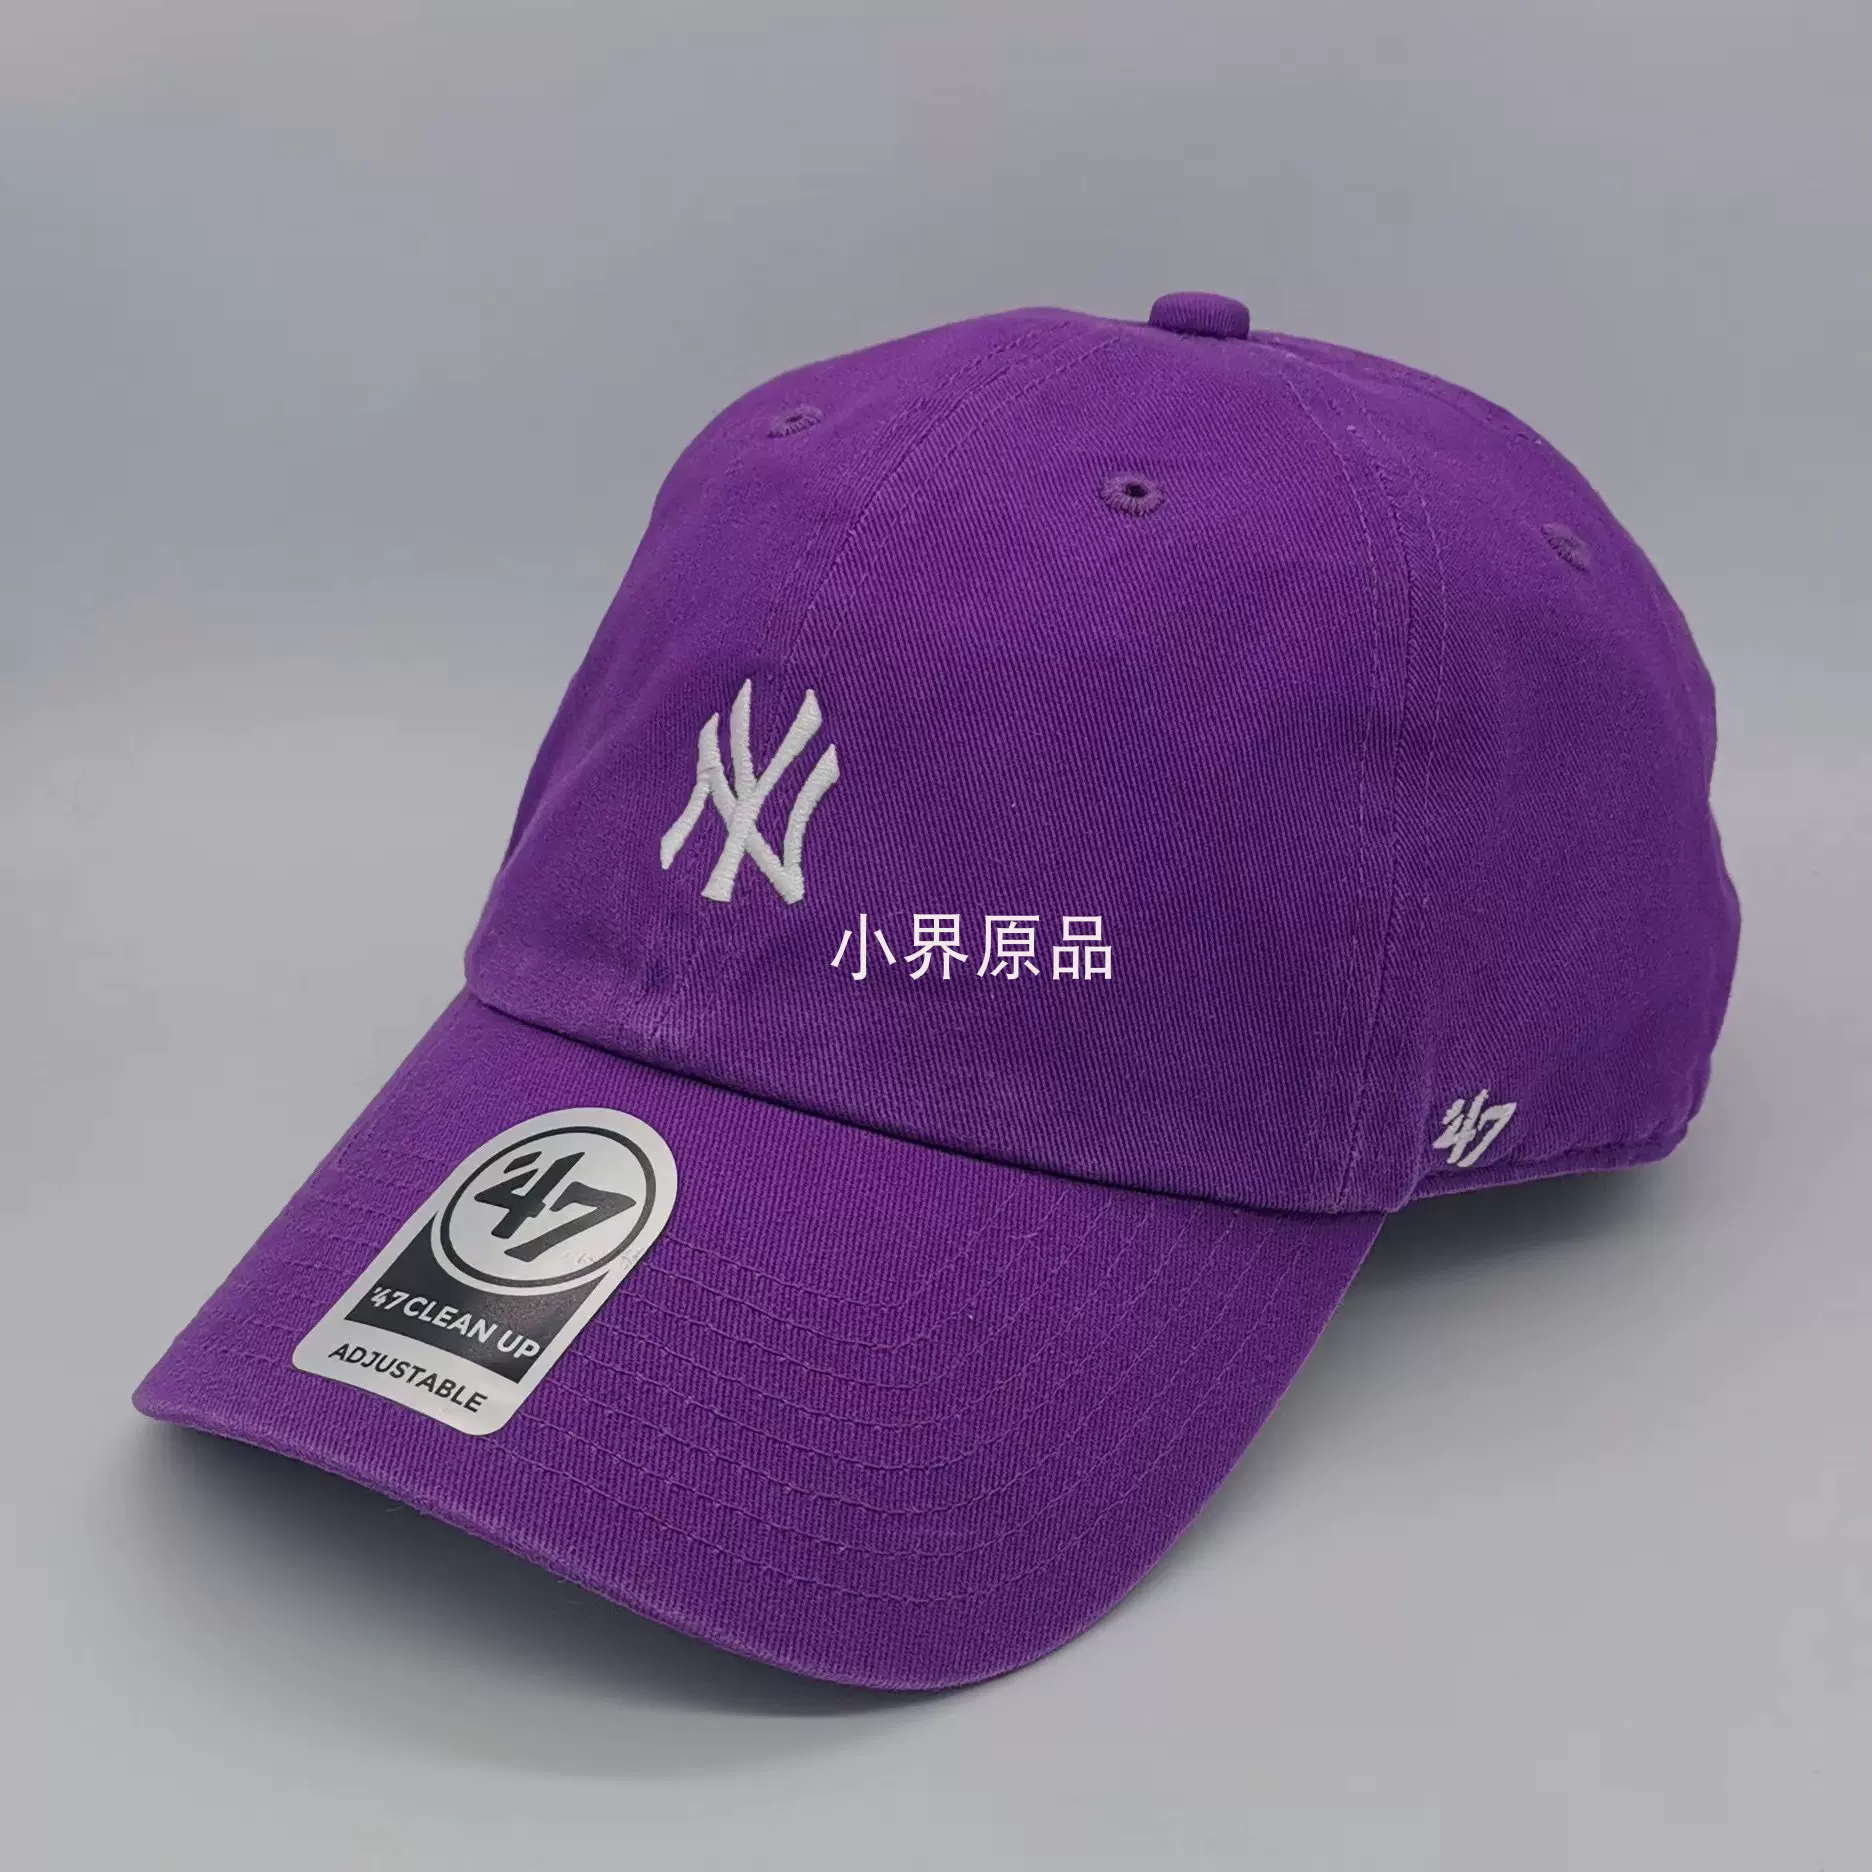 小界原品美系47棒球帽紫色水洗软顶刺绣小标情侣款ins风-Taobao